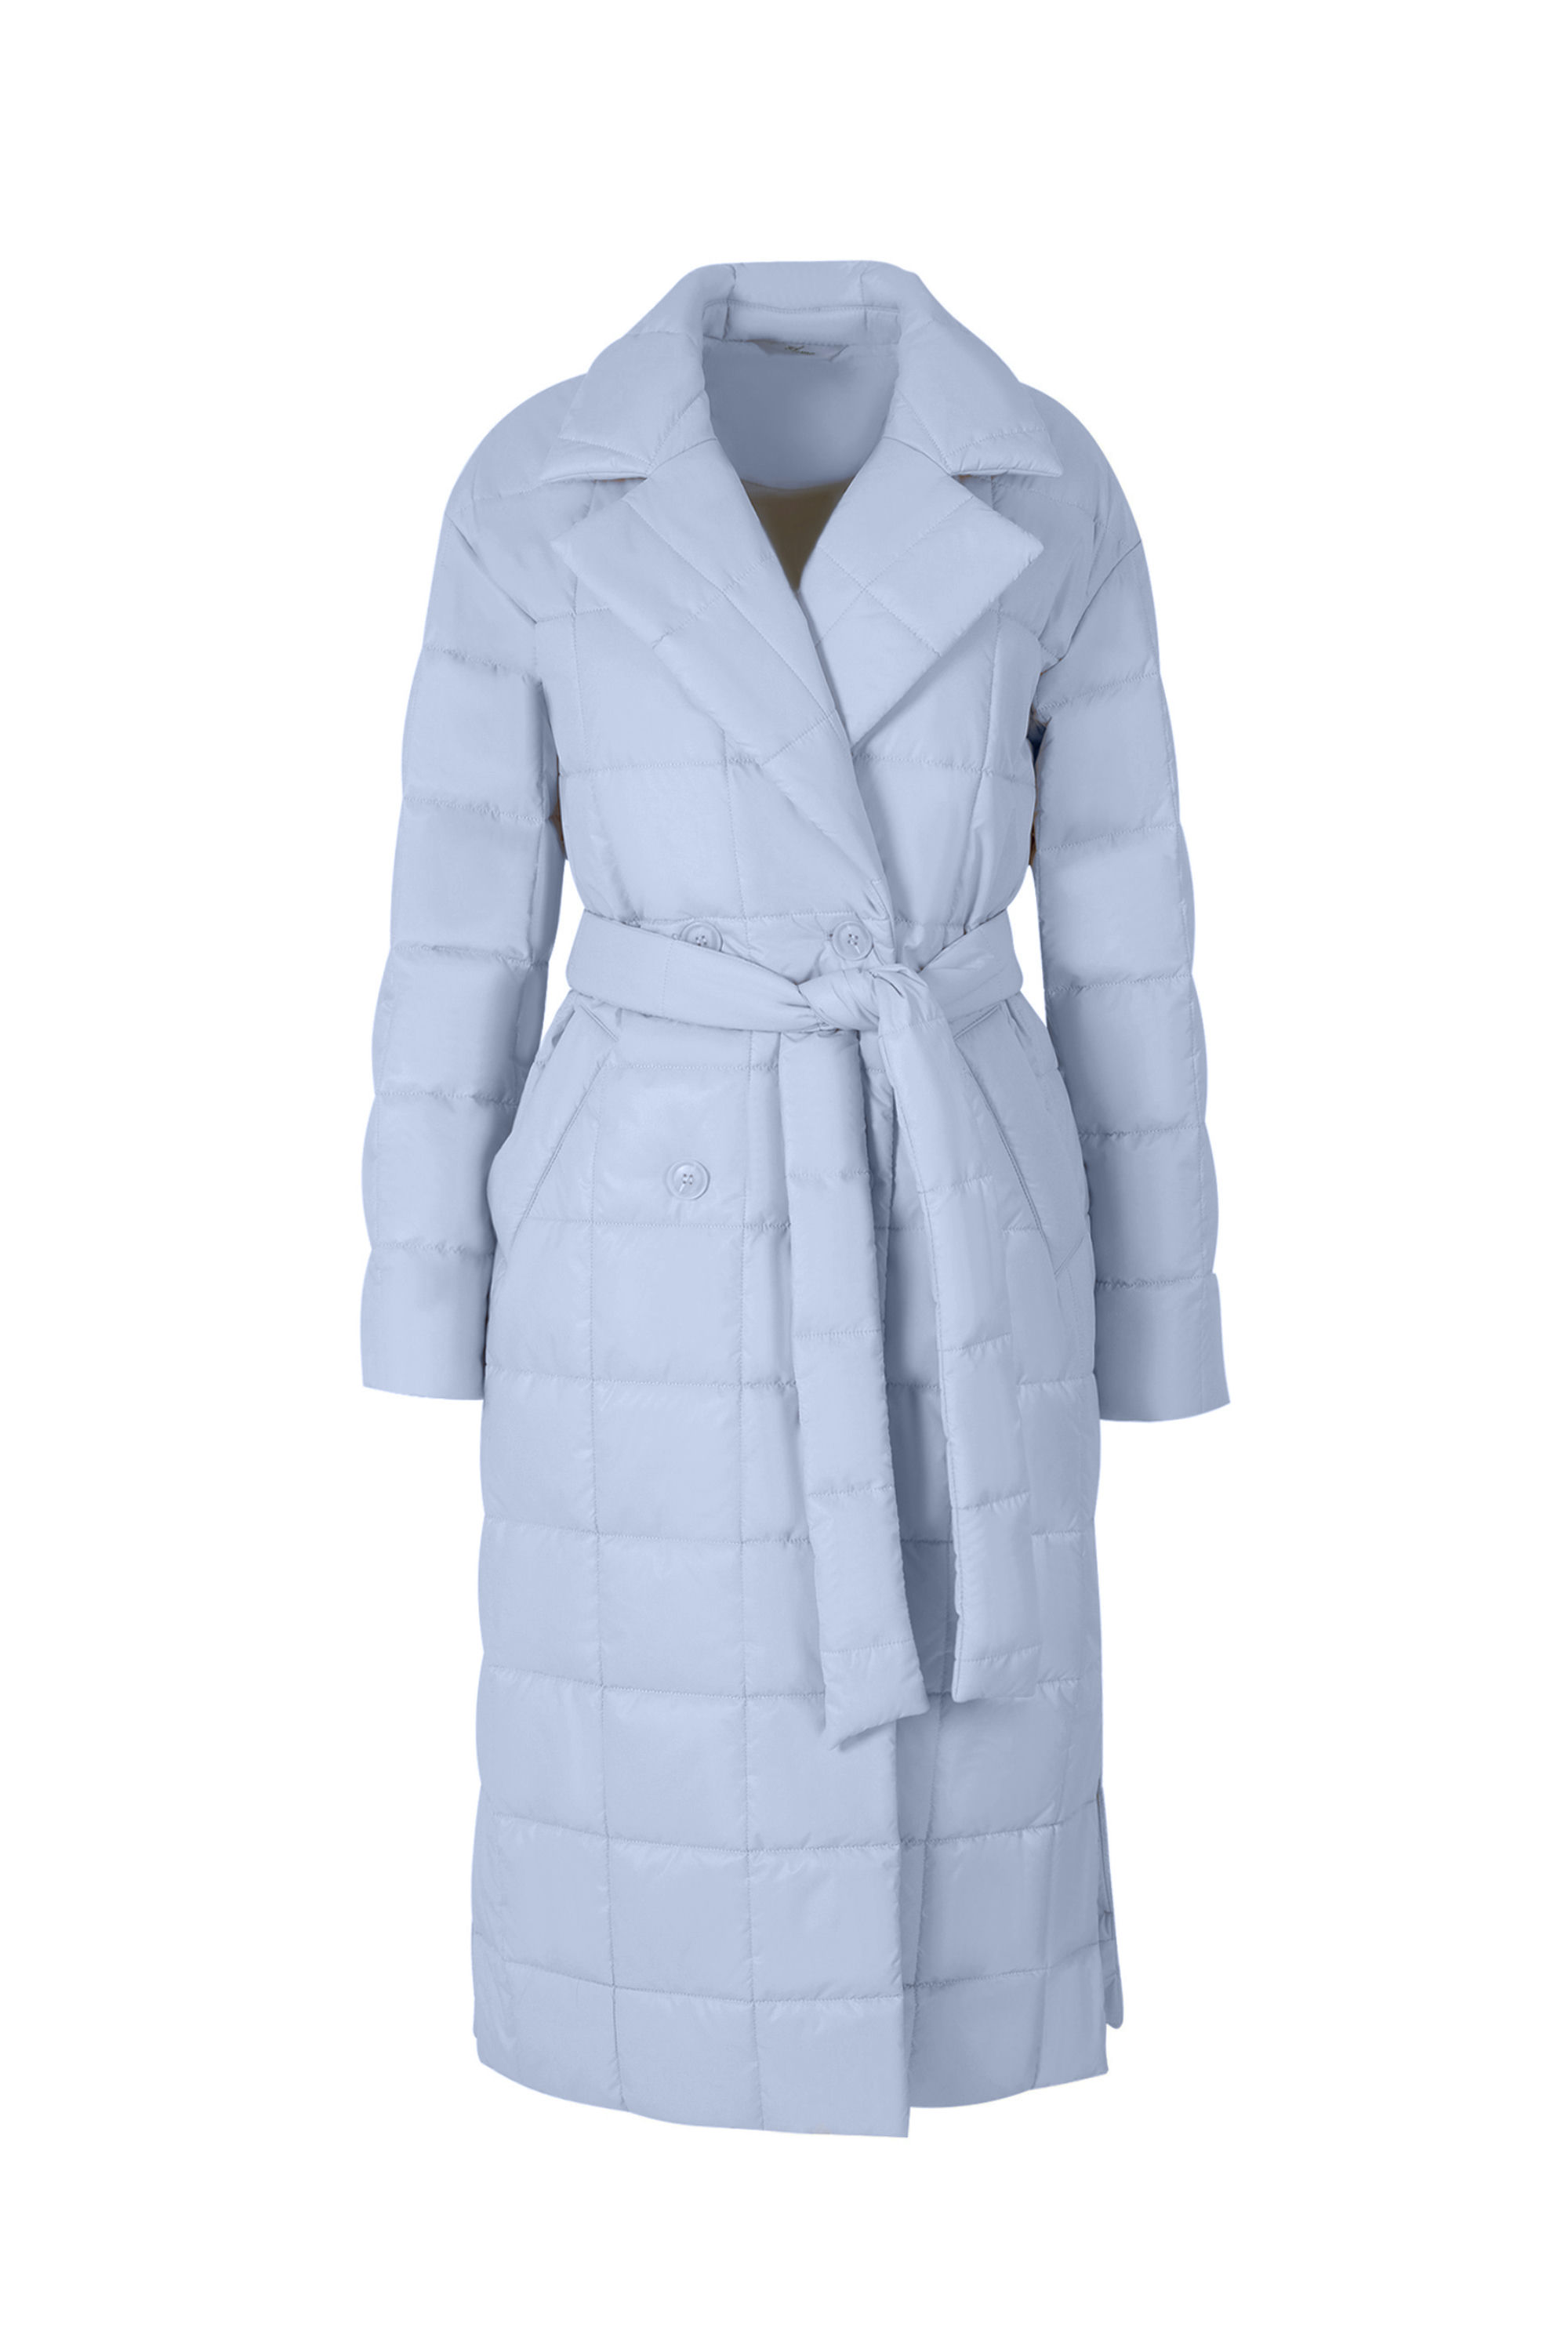 Пальто женское плащевое утепленное 5-12405-1. Фото 1.